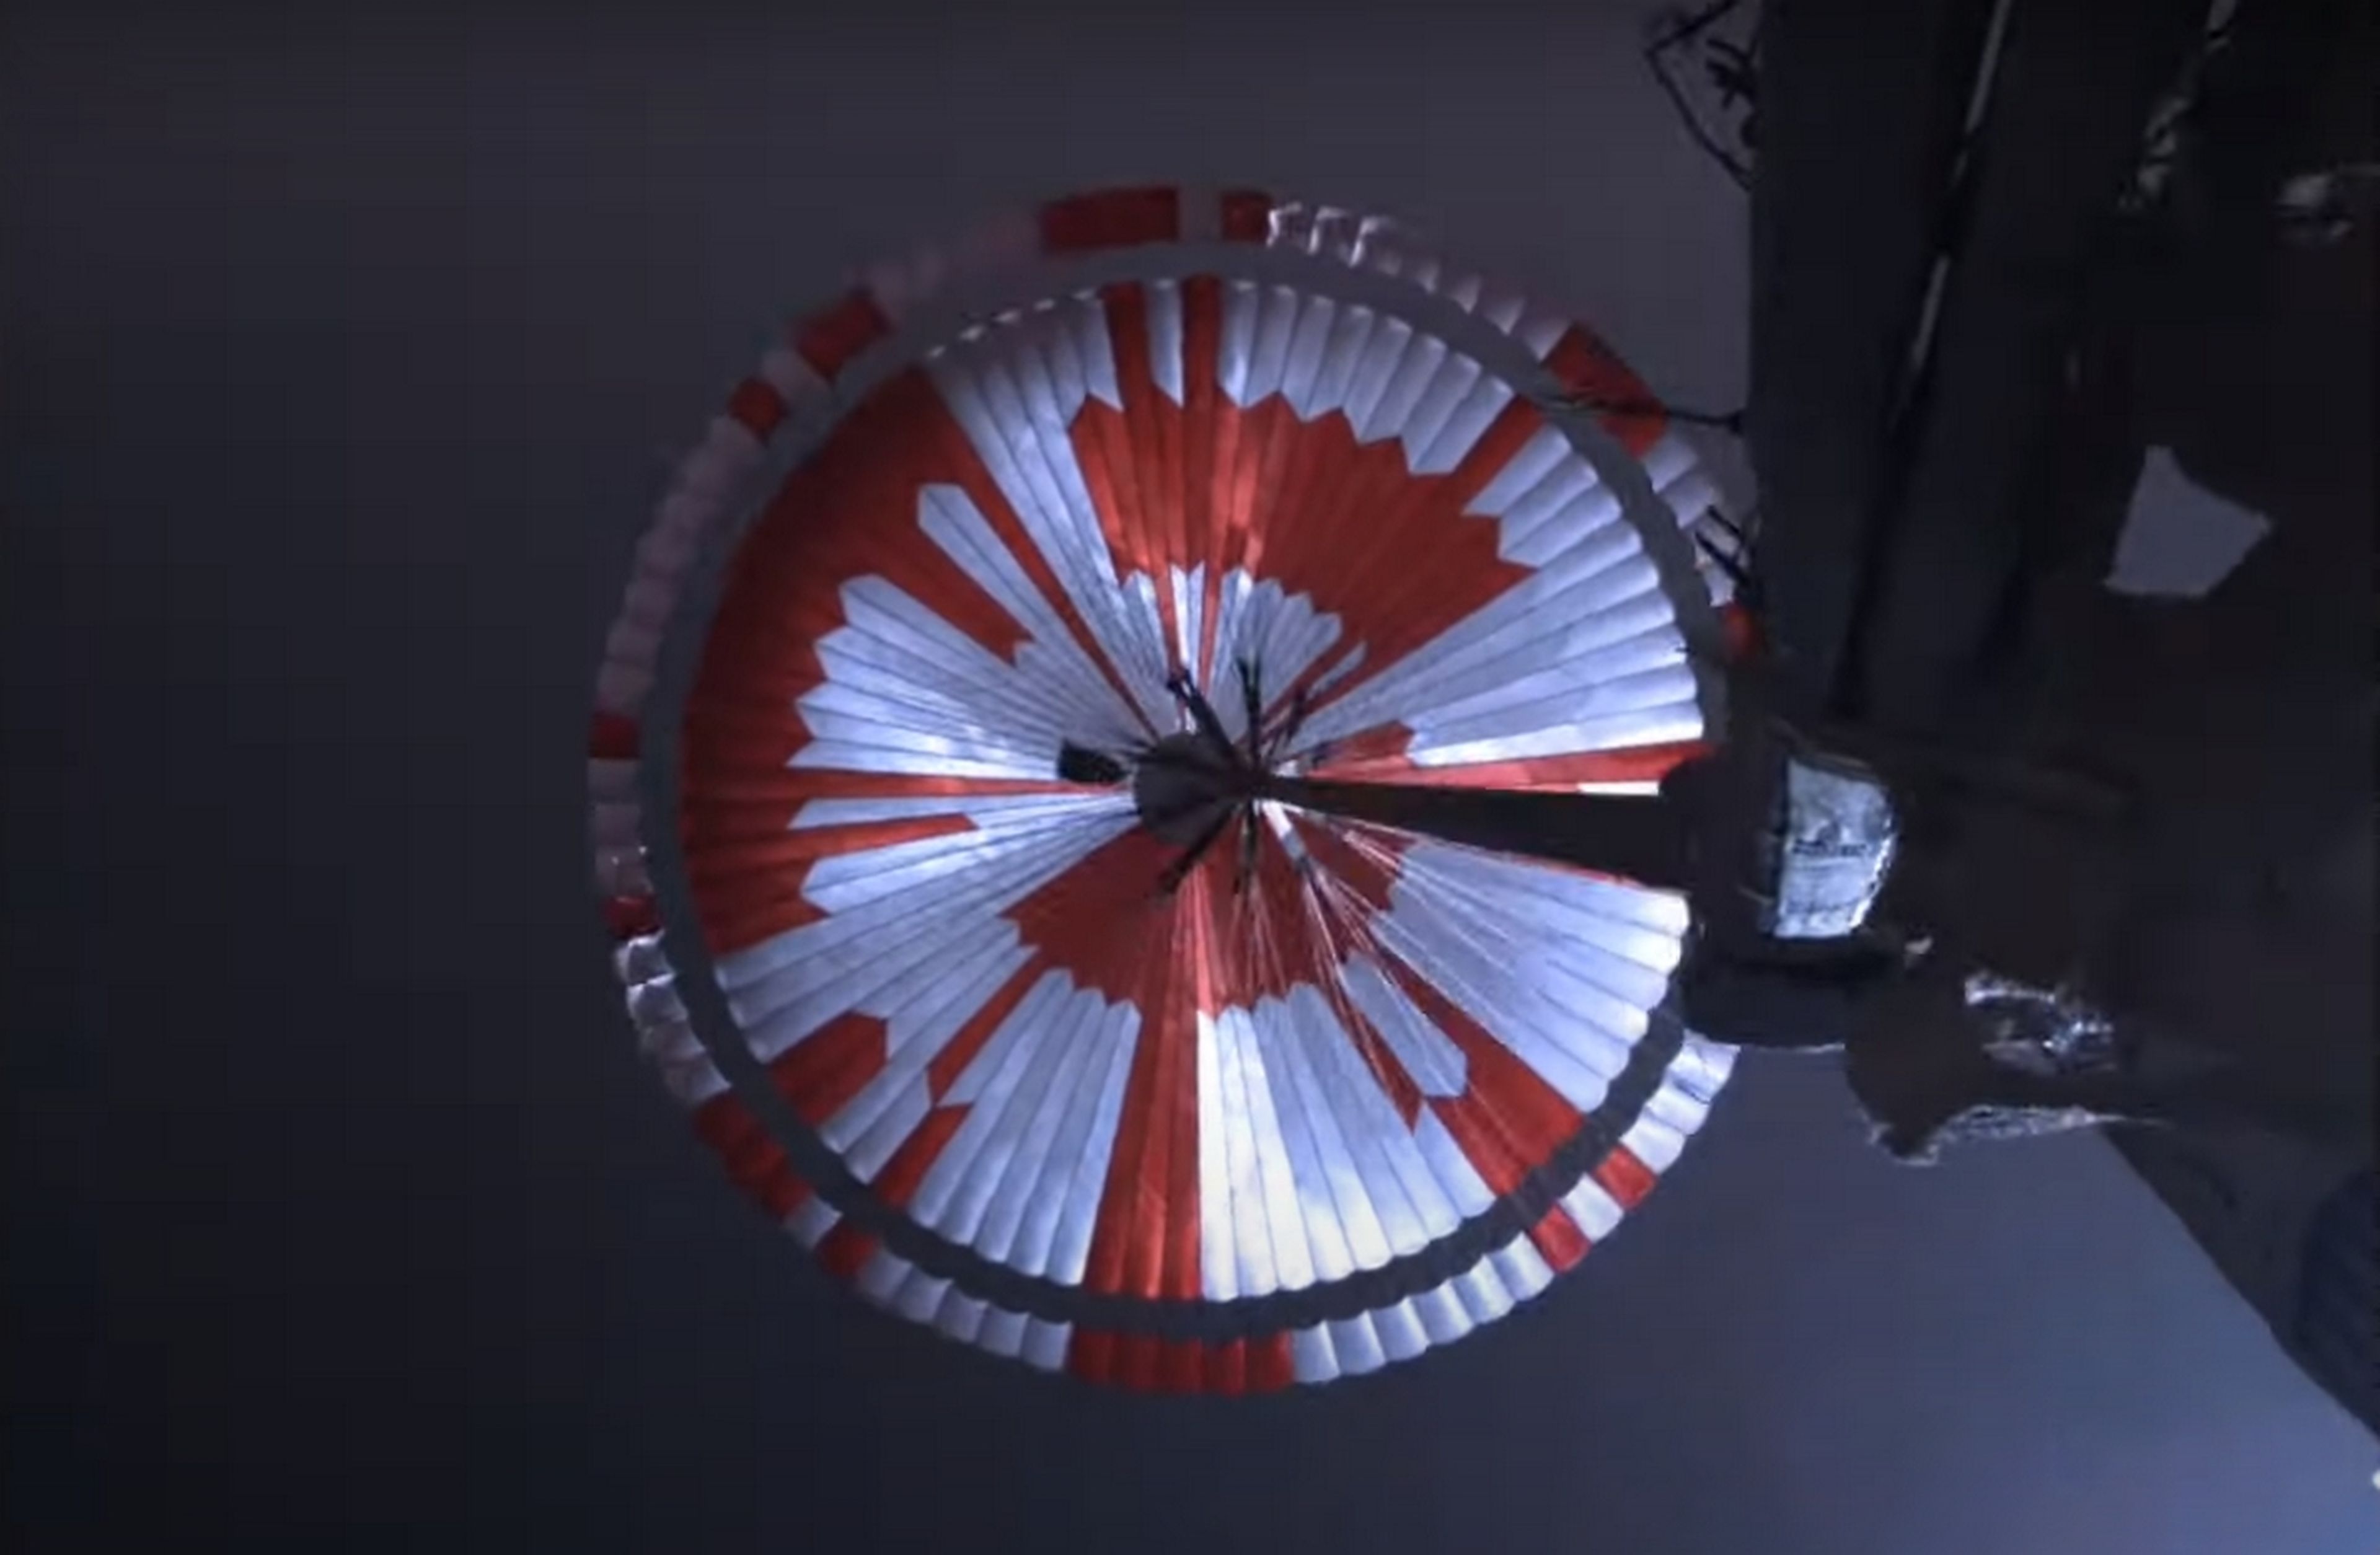 El paracaídas del Perseverance escondía un mensaje secreto